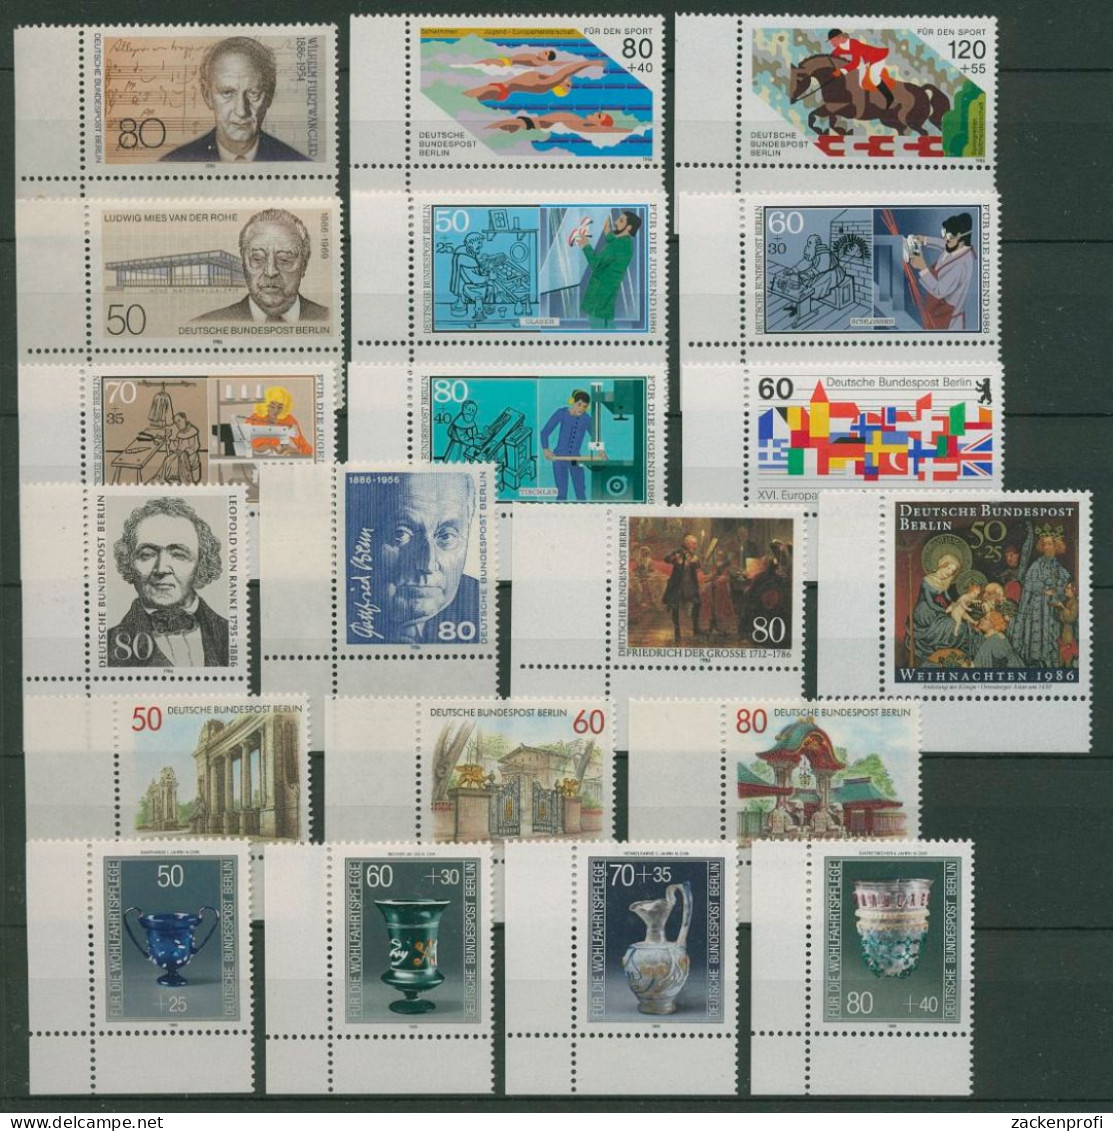 Berlin 1986 Sondermarken Komplett Aus 750/69 Ecke 3 Postfrisch (SG19686) - Unused Stamps